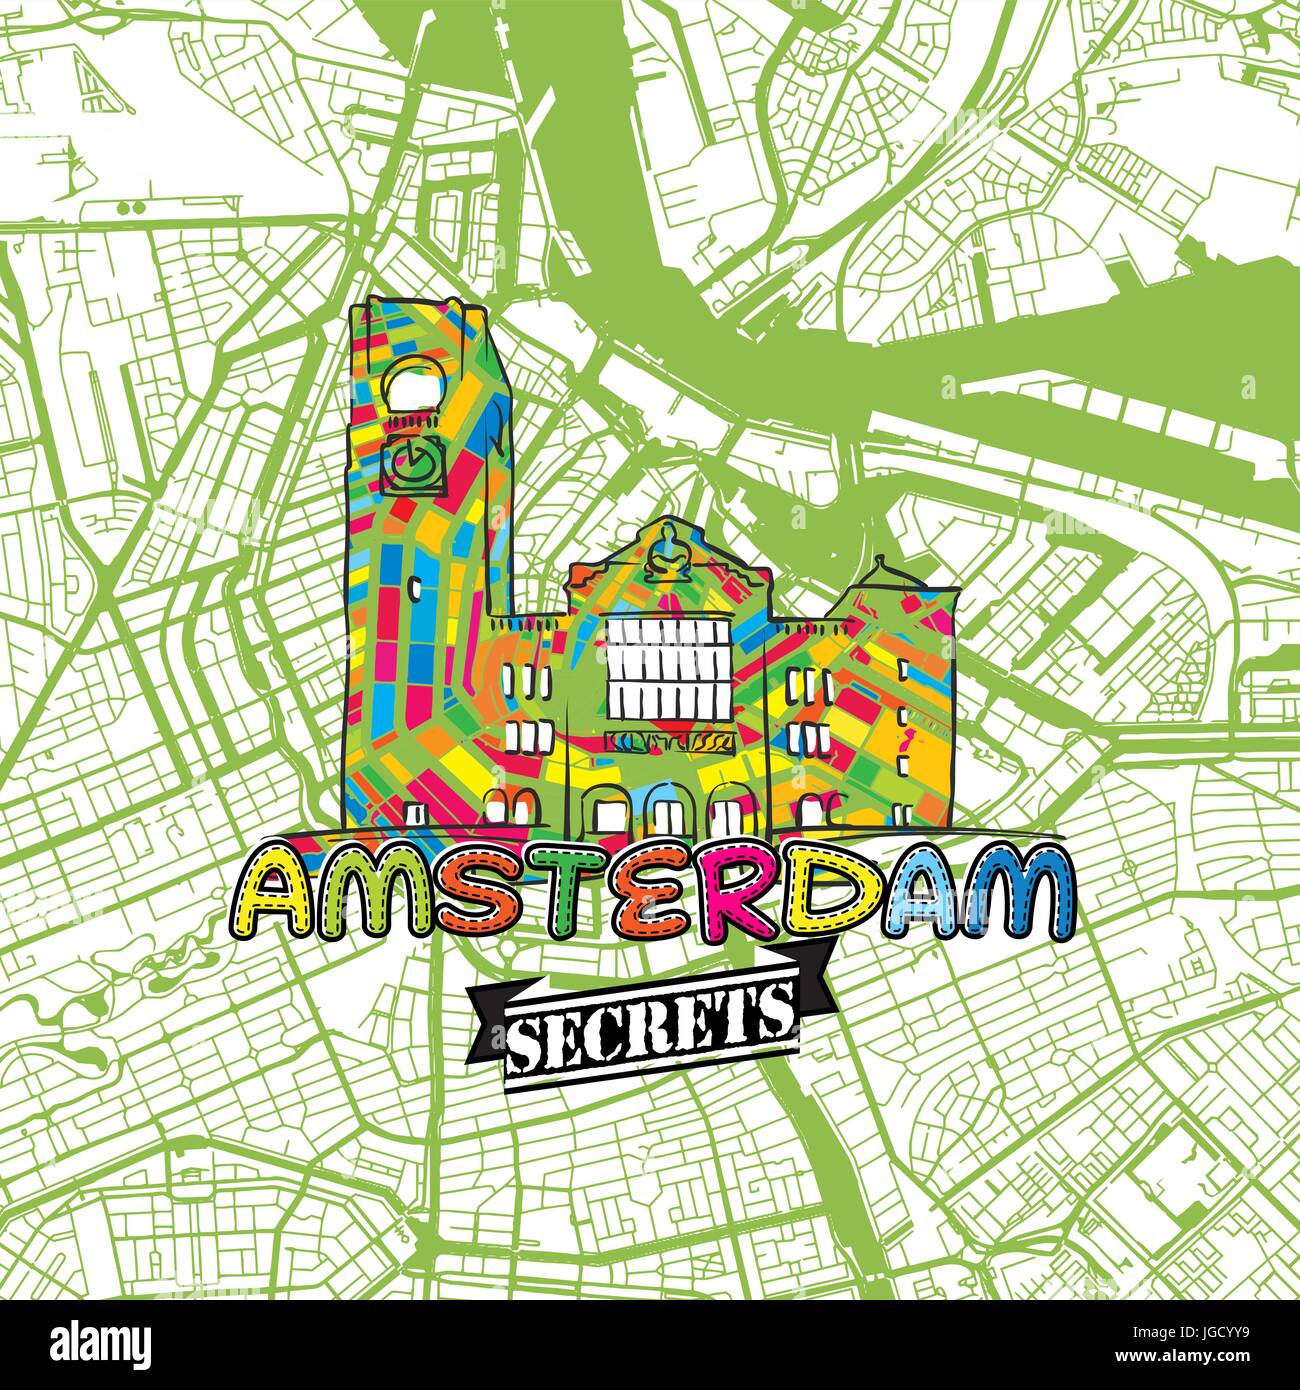 Amsterdam Reise Geheimnisse Art Map für die Zuordnung von Experten und Reiseführer. Handgemachte Stadt Logo, Typo-Abzeichen und Hand gezeichnete Vektorbild auf Top sind gruppiert Stock Vektor